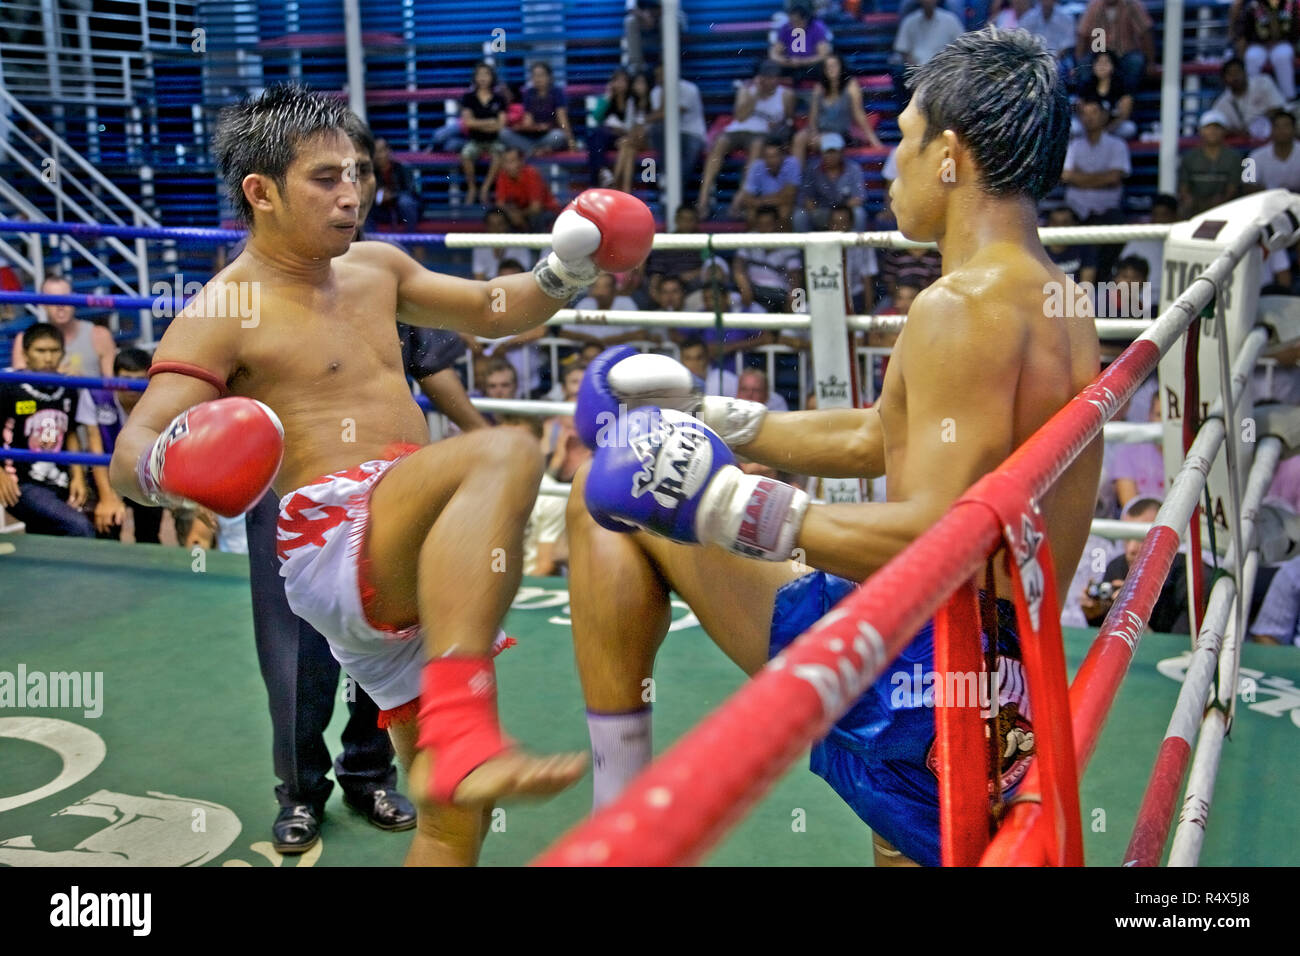 NOCHE DE KICK BOXING, 🚨YA EMPEZÓ🚨 Sigue con nosotros las peleas de Kick  boxing y Muay Thai #peleas #kickboxing #muaythai, By InternetvDeportes